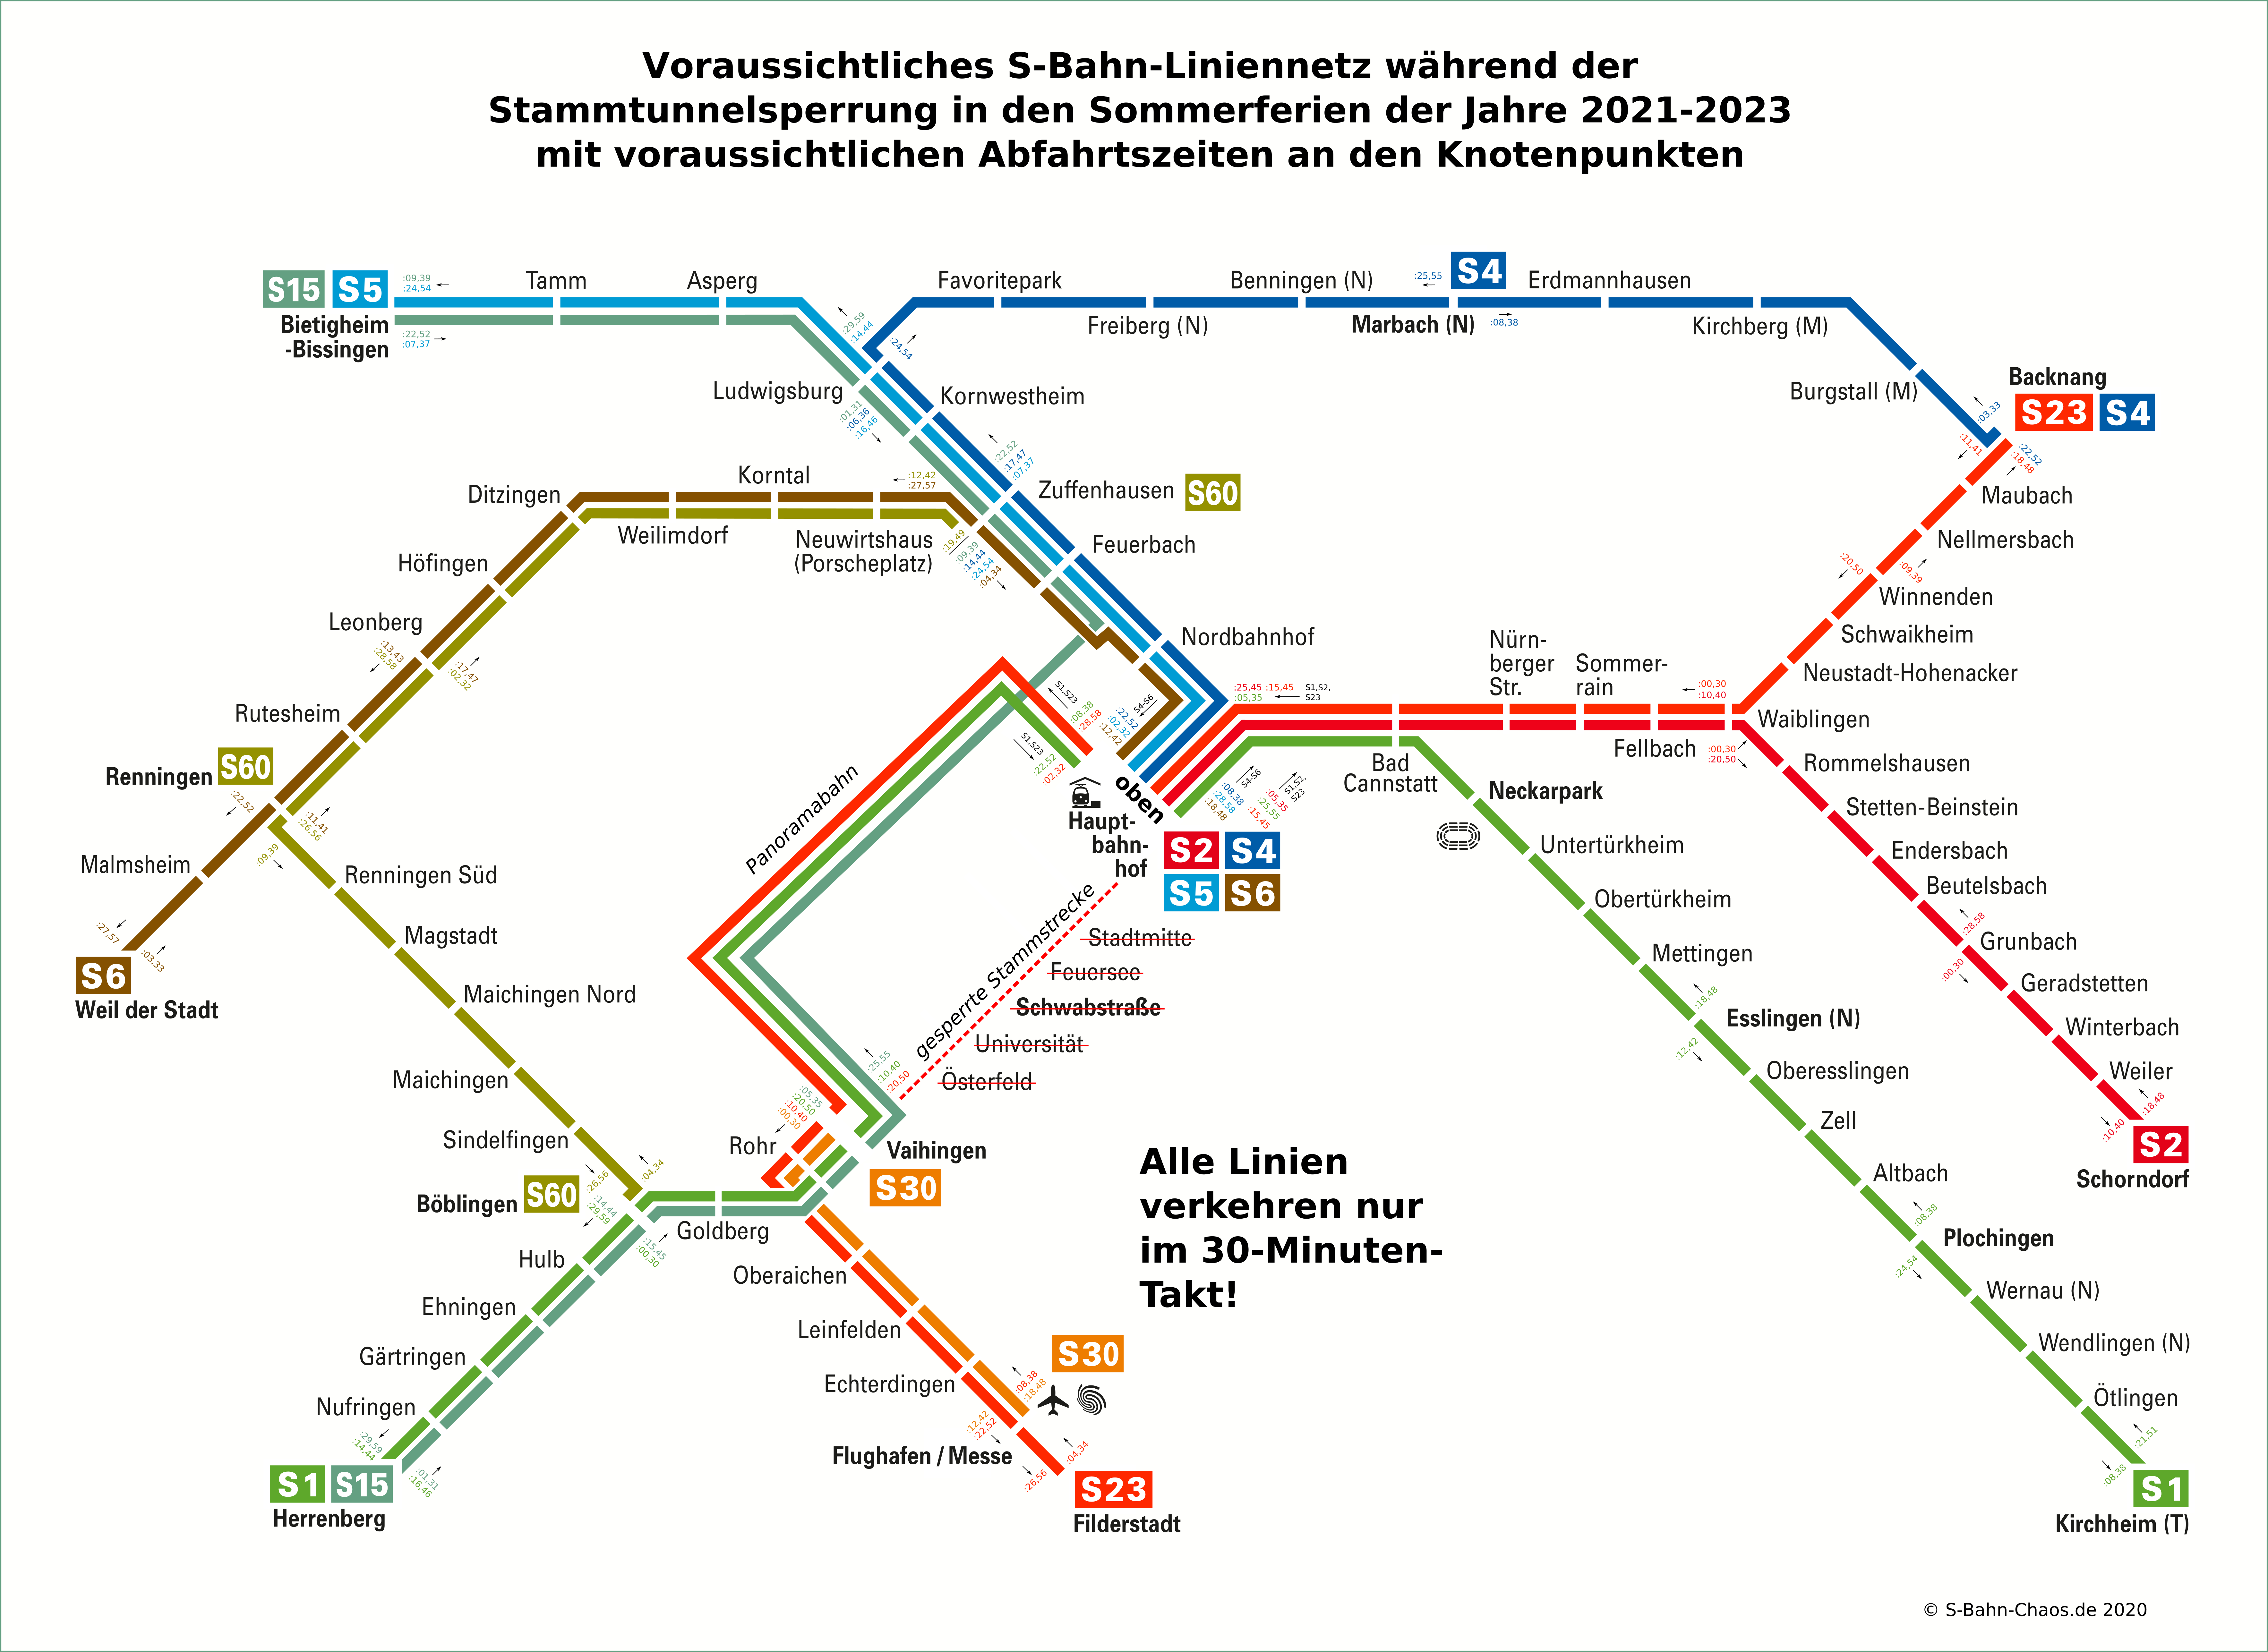 voraussichtliches Liniennetz während der Stammtunnelsperrungen in den Sommerferien 2021-2023 mit Taktzeiten